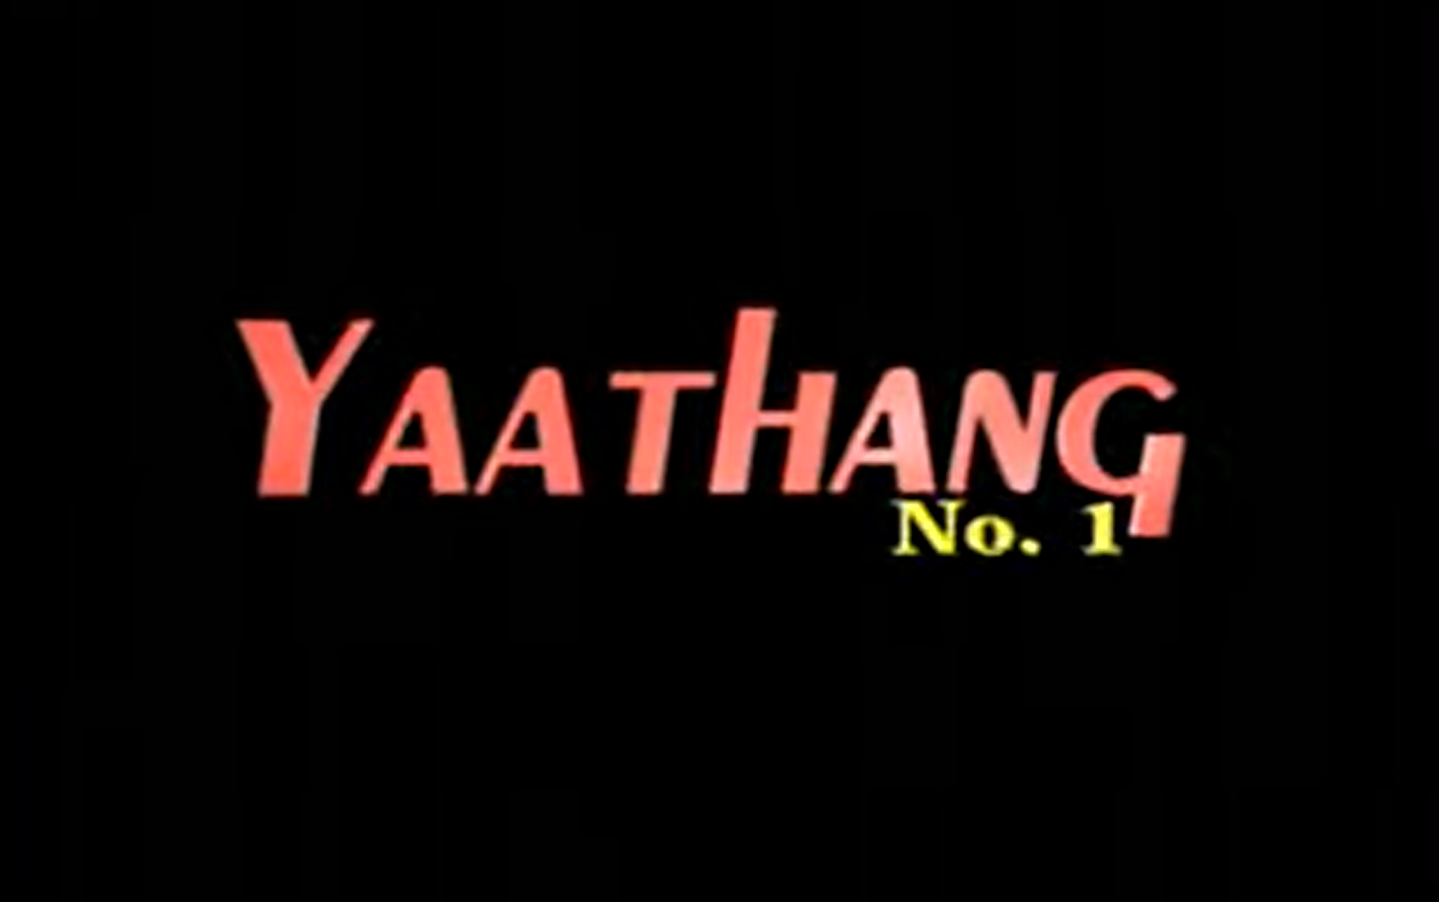 Yaathang No. 1 (2005)